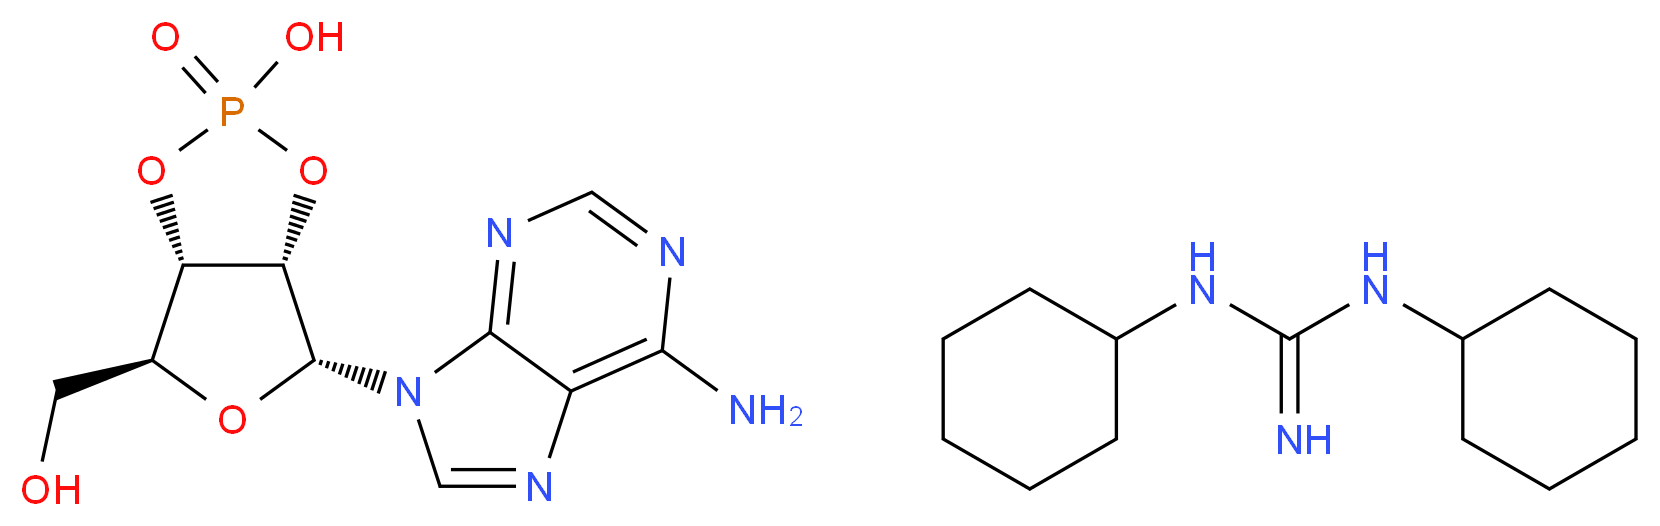 634-01-5 molecular structure